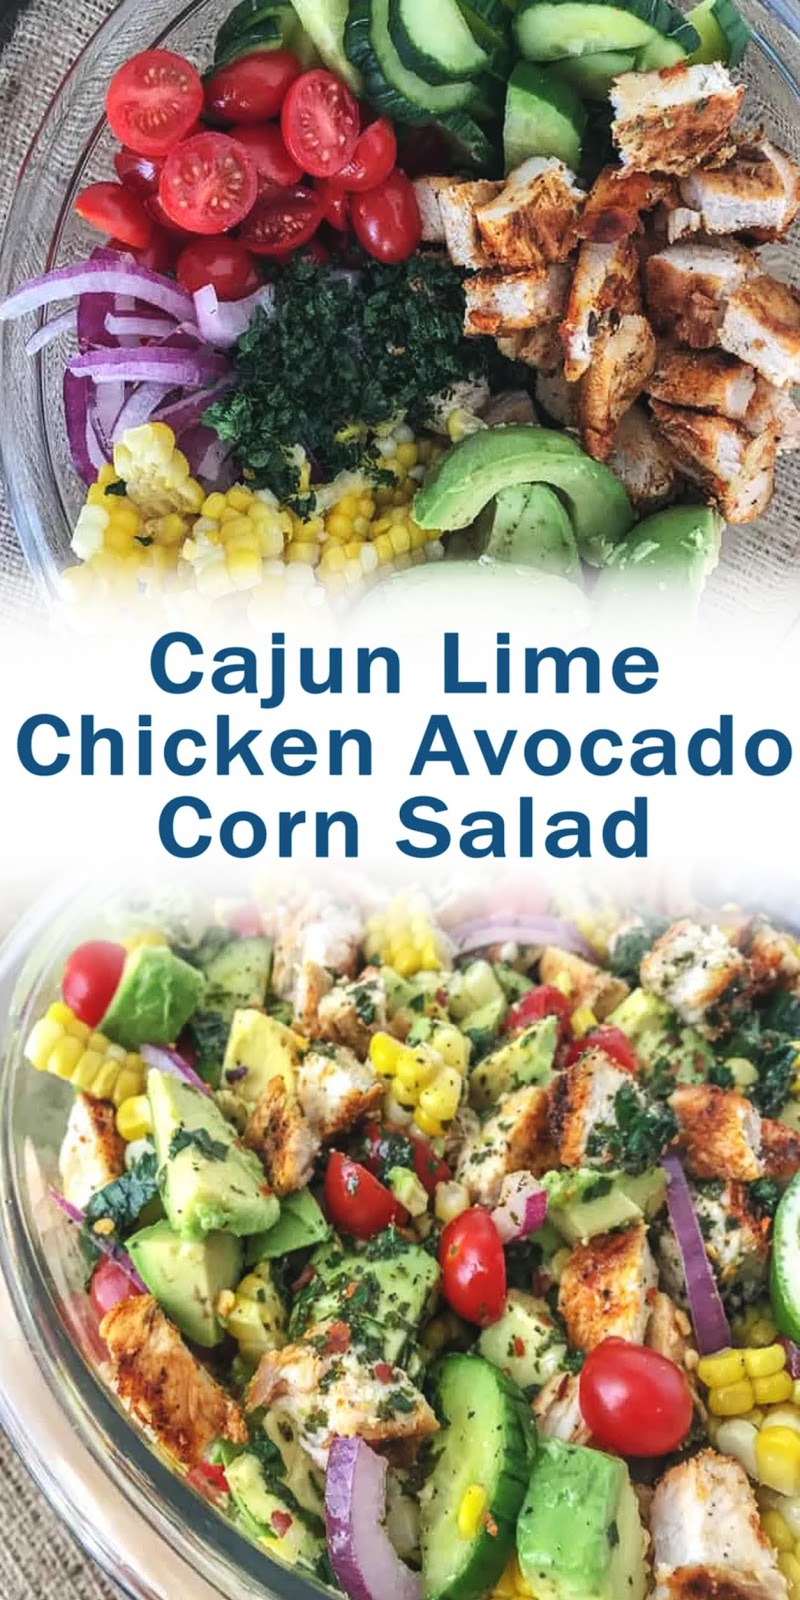 Cajun Lime Chicken Avocado Corn Salad